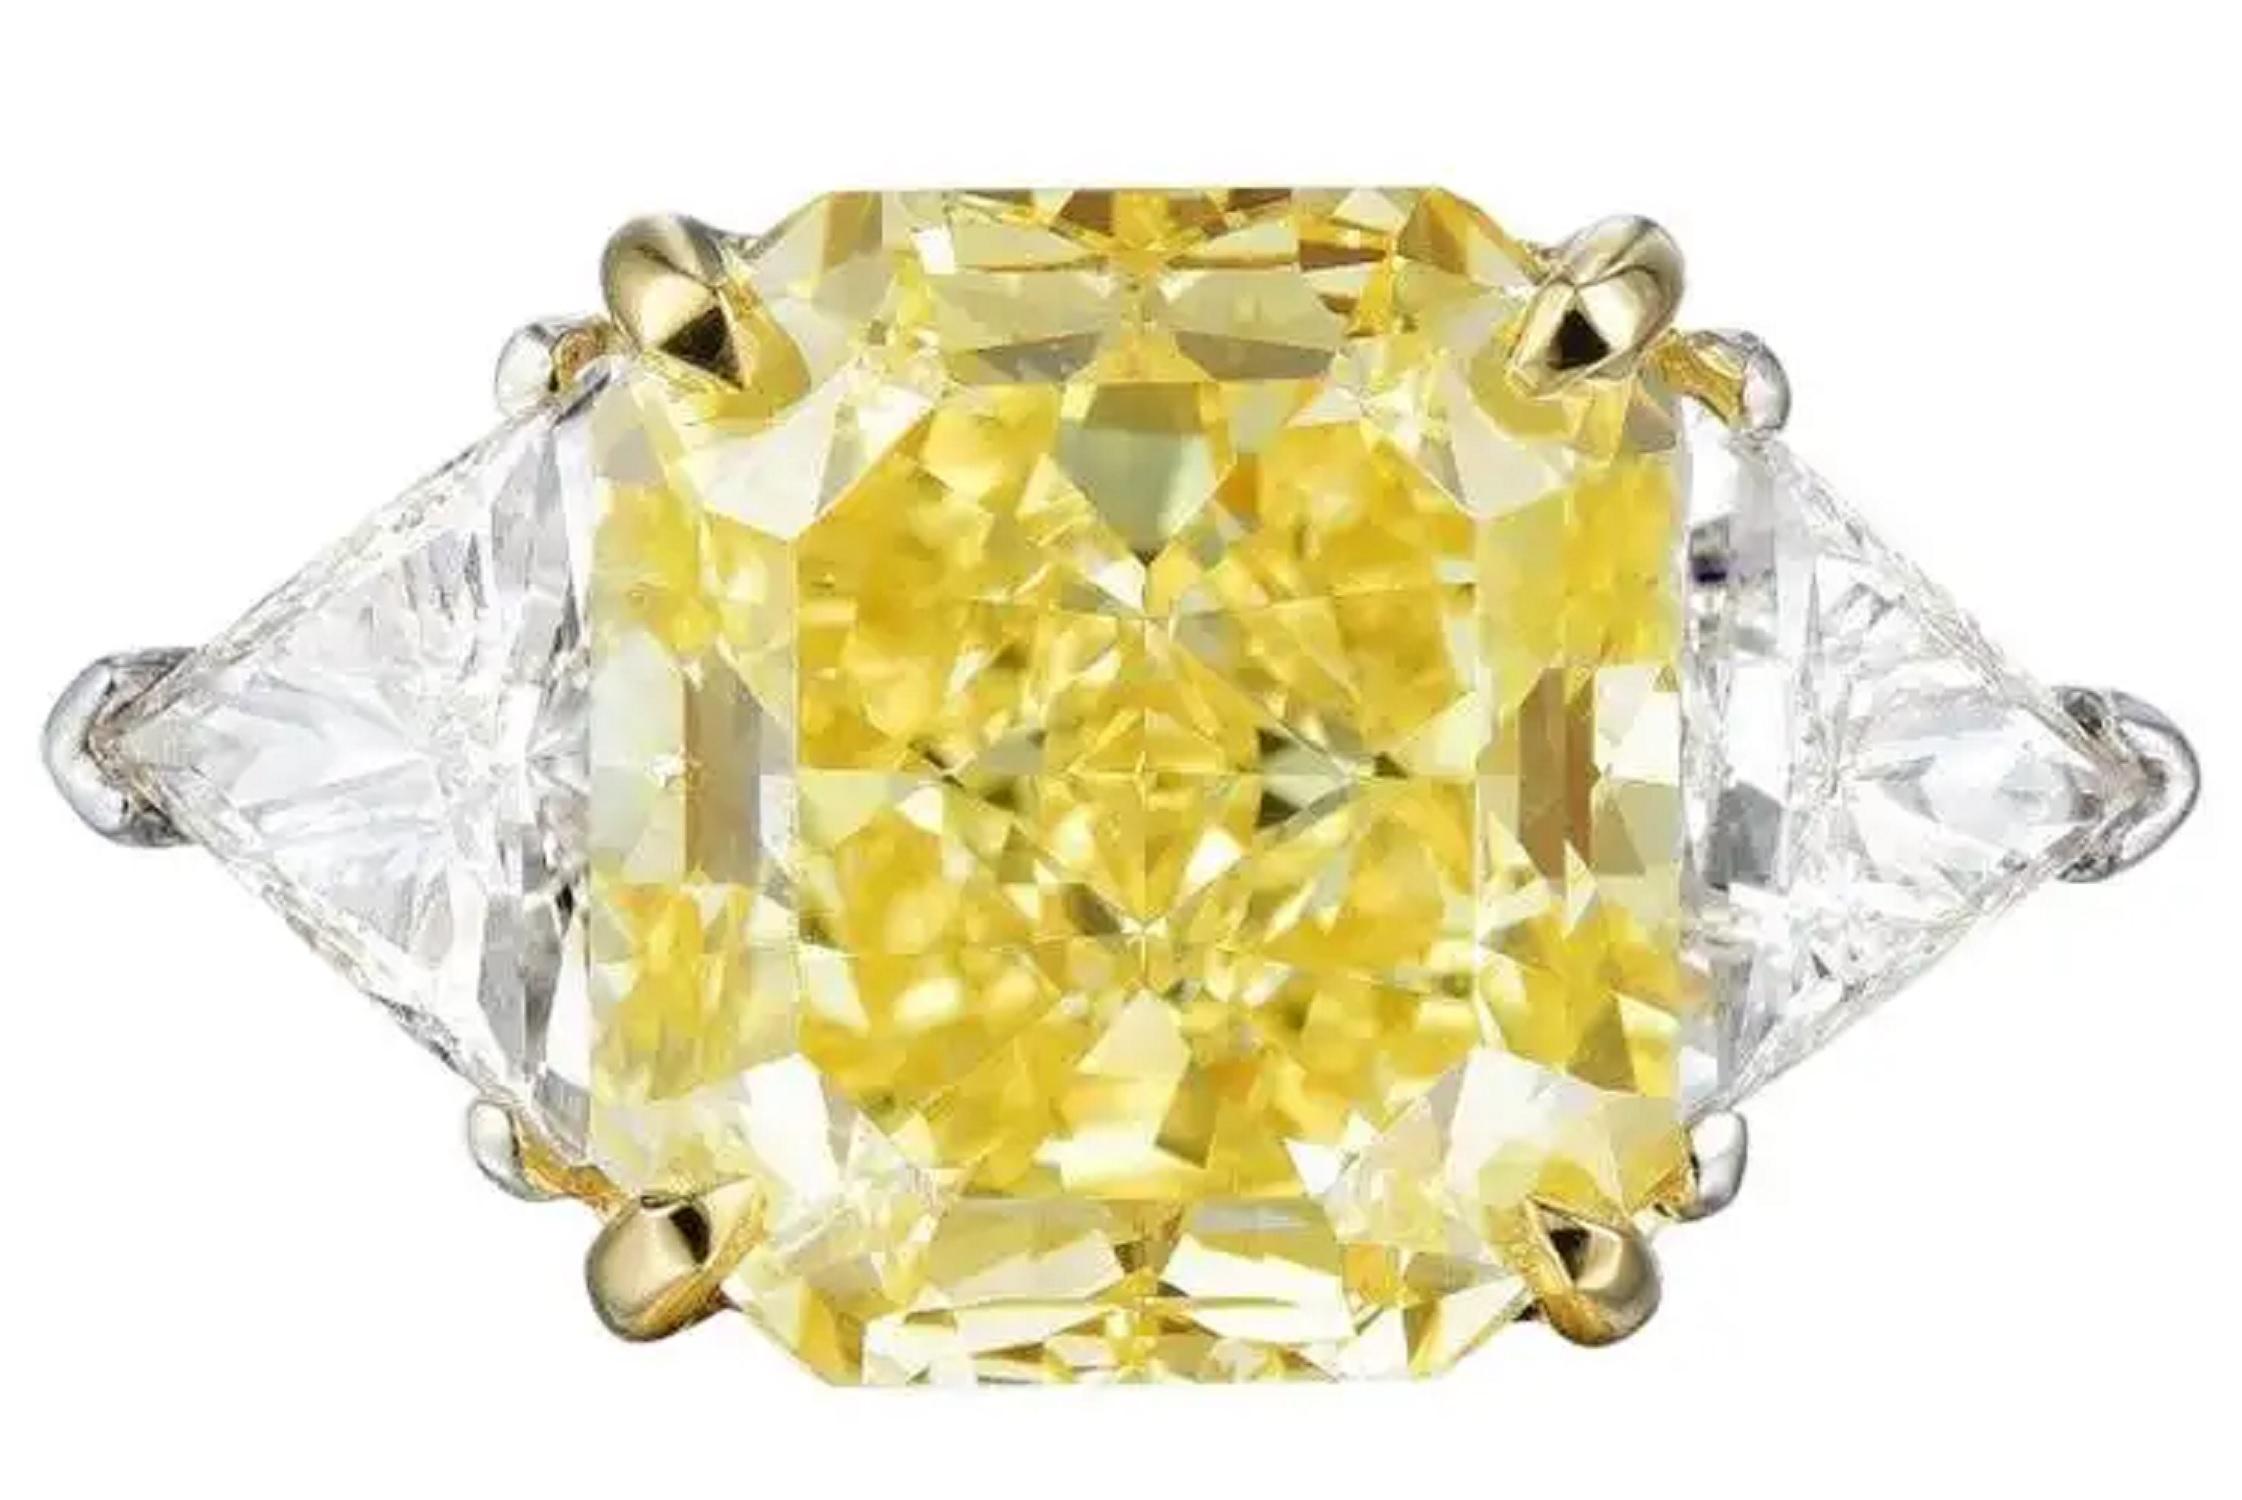 GIA Certified 2.31 Carat Fancy Yellow Cushion Cut Diamond Ring VS2 Clarity